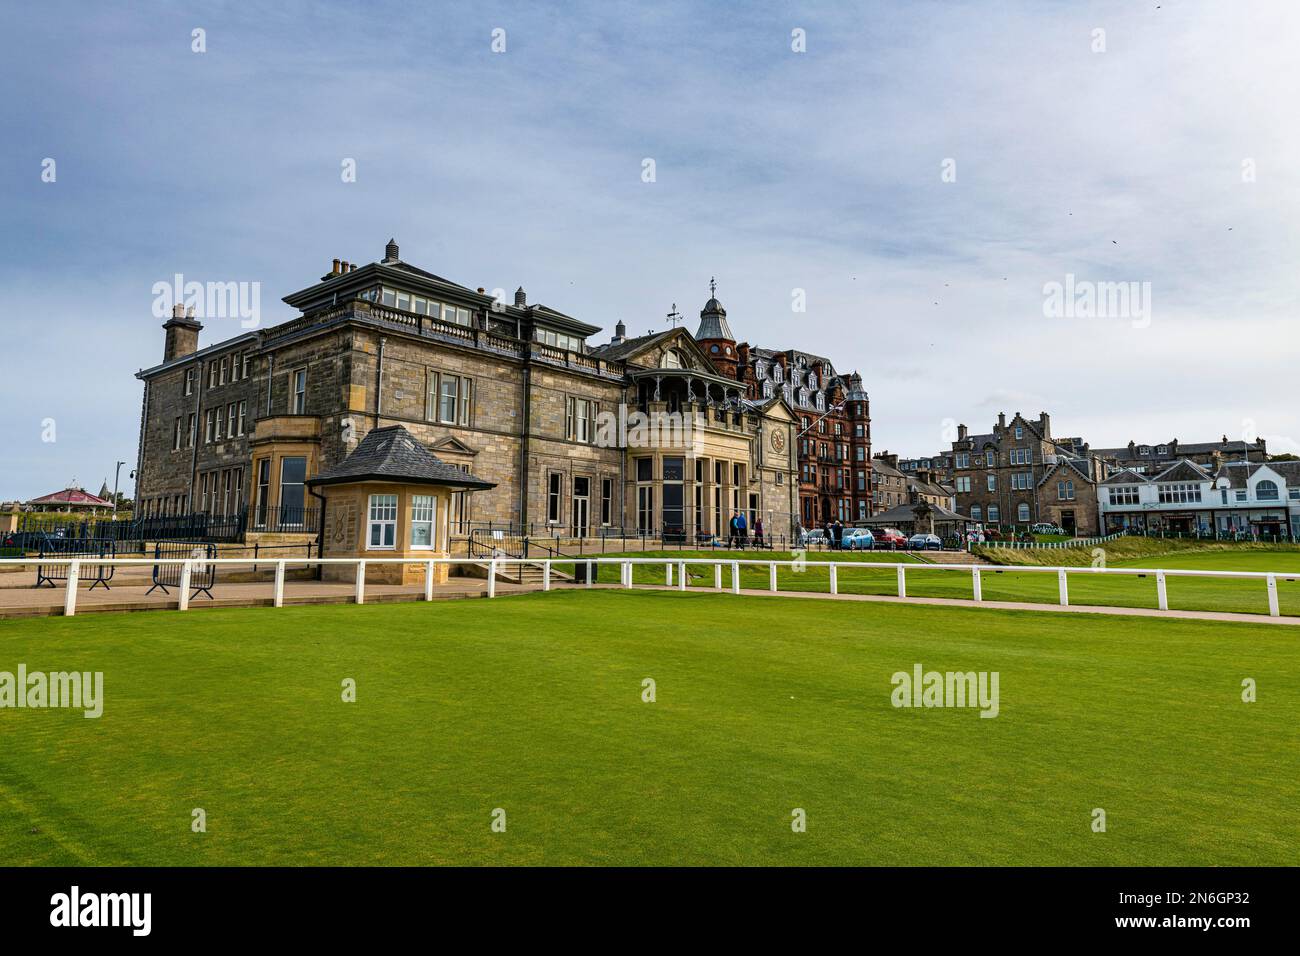 Club House de l'ancien terrain de golf, St. Andrews, Écosse, Royaume-Uni Banque D'Images